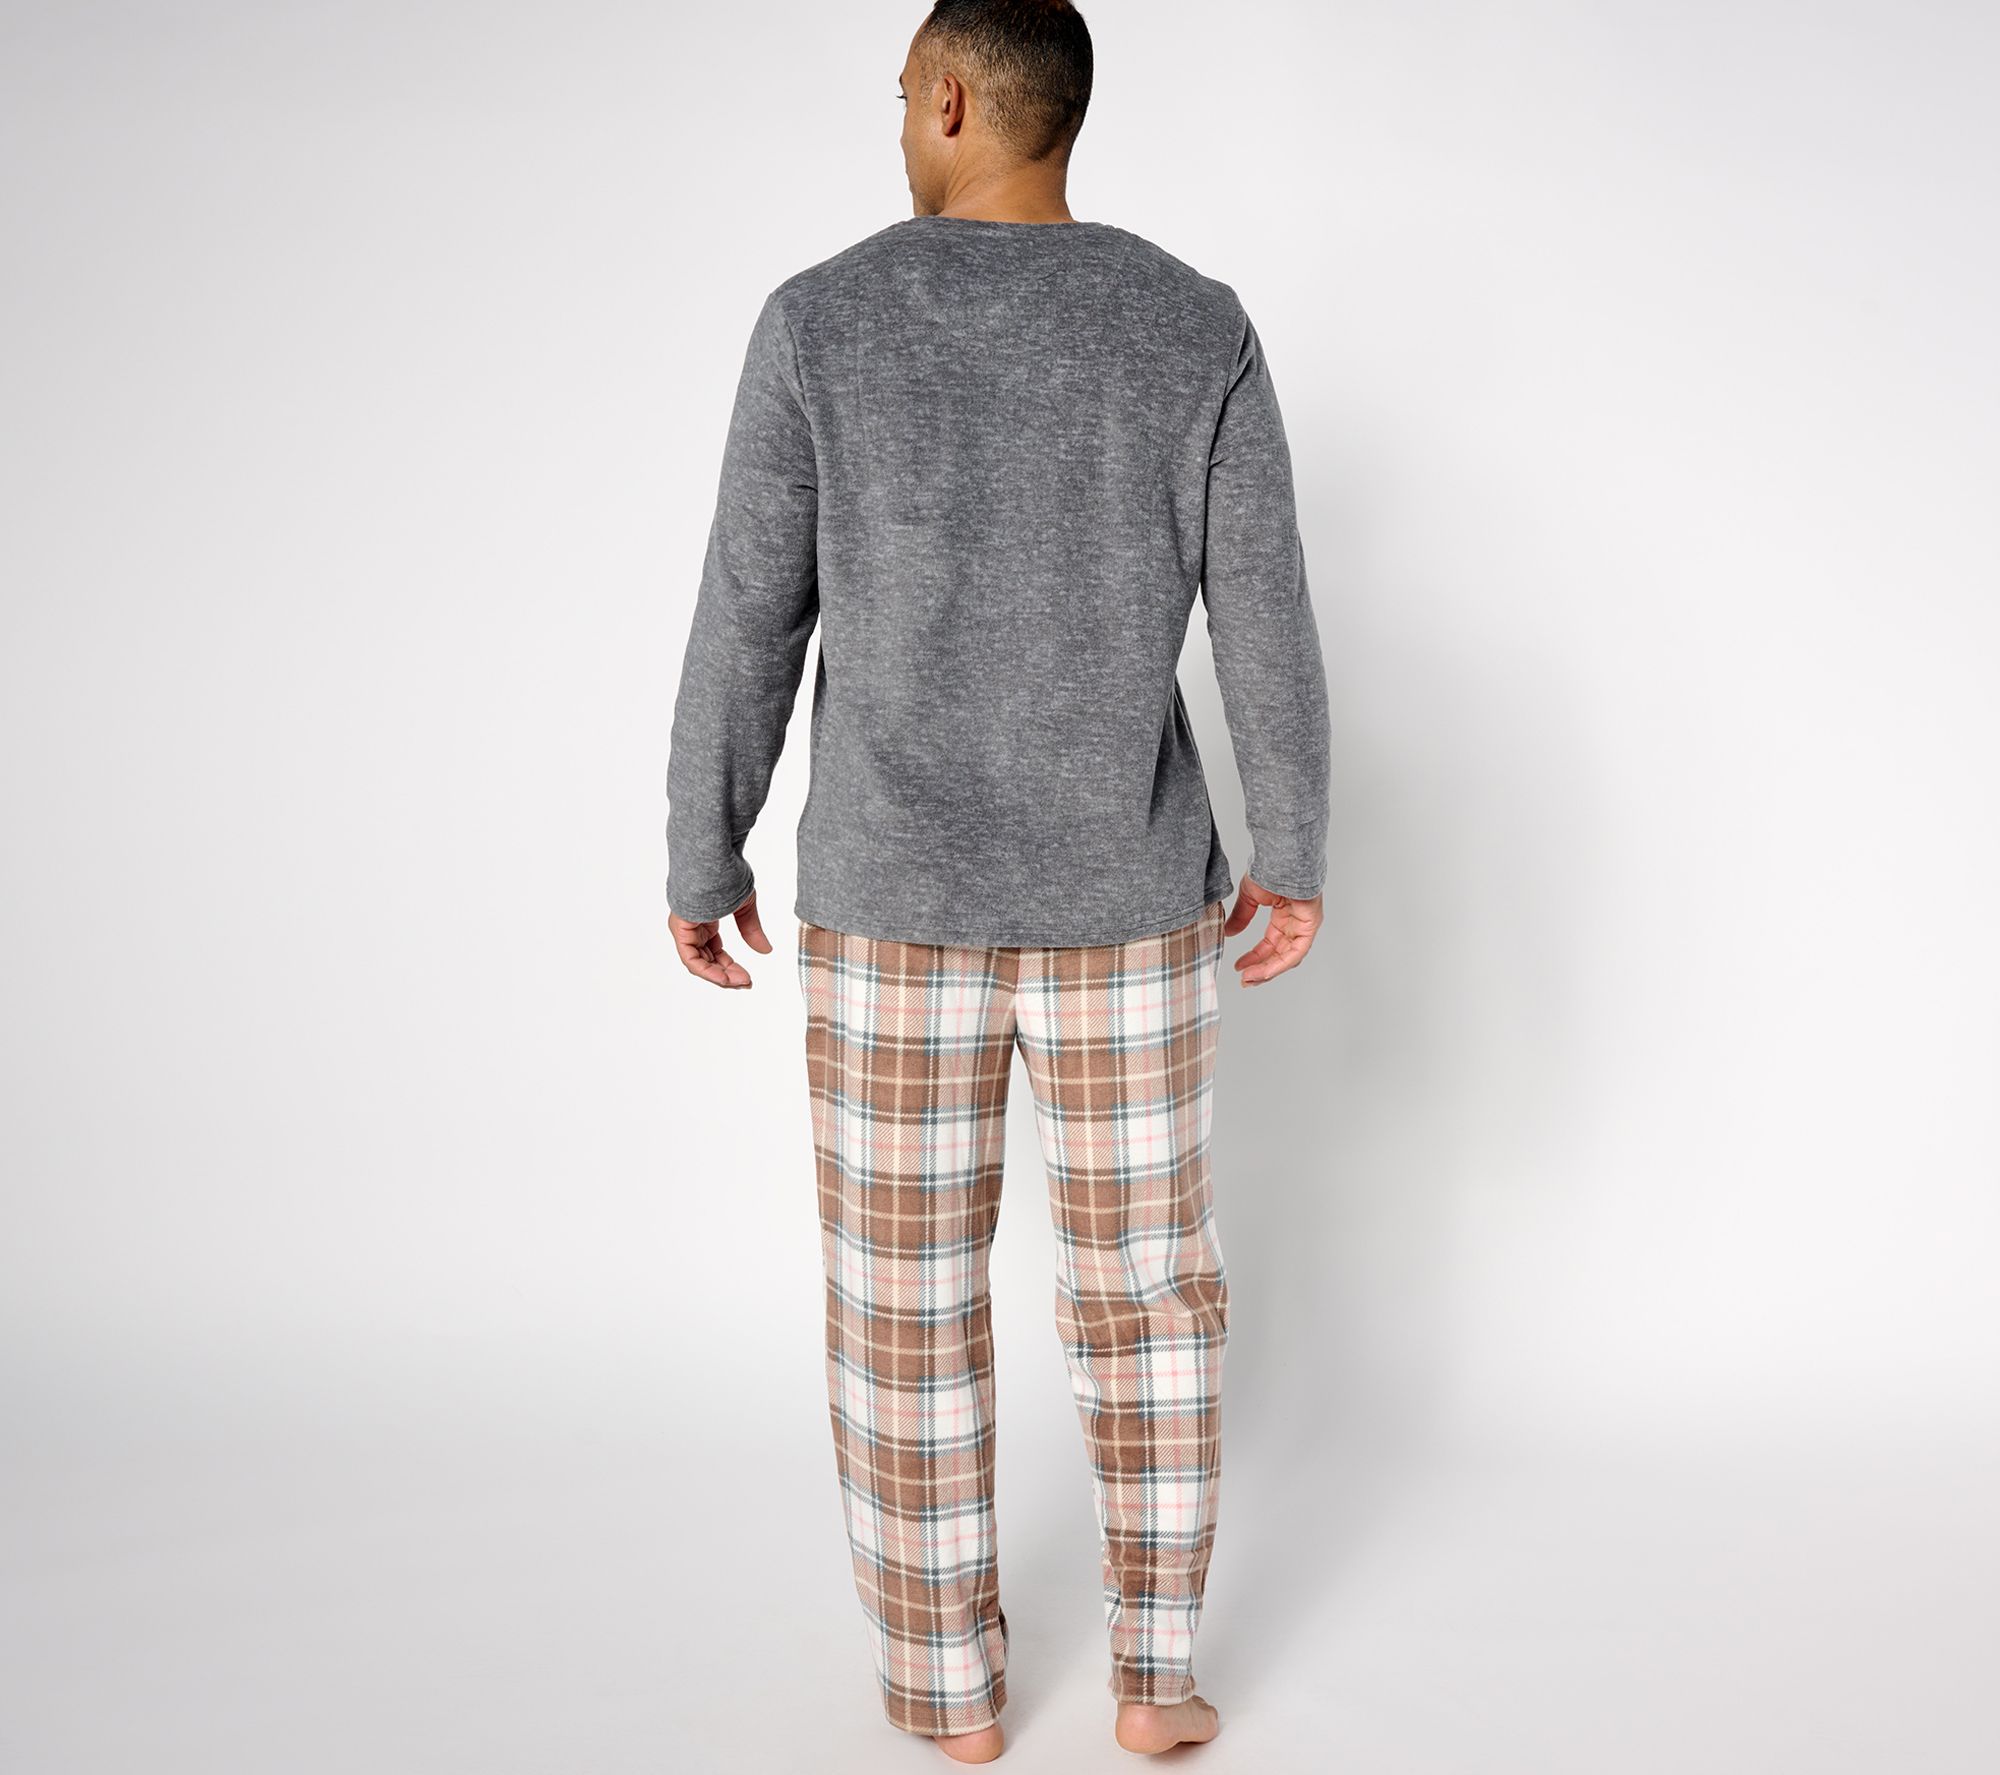 Cuddl Duds Men's Fleecewear with Stretch Pajama Set 